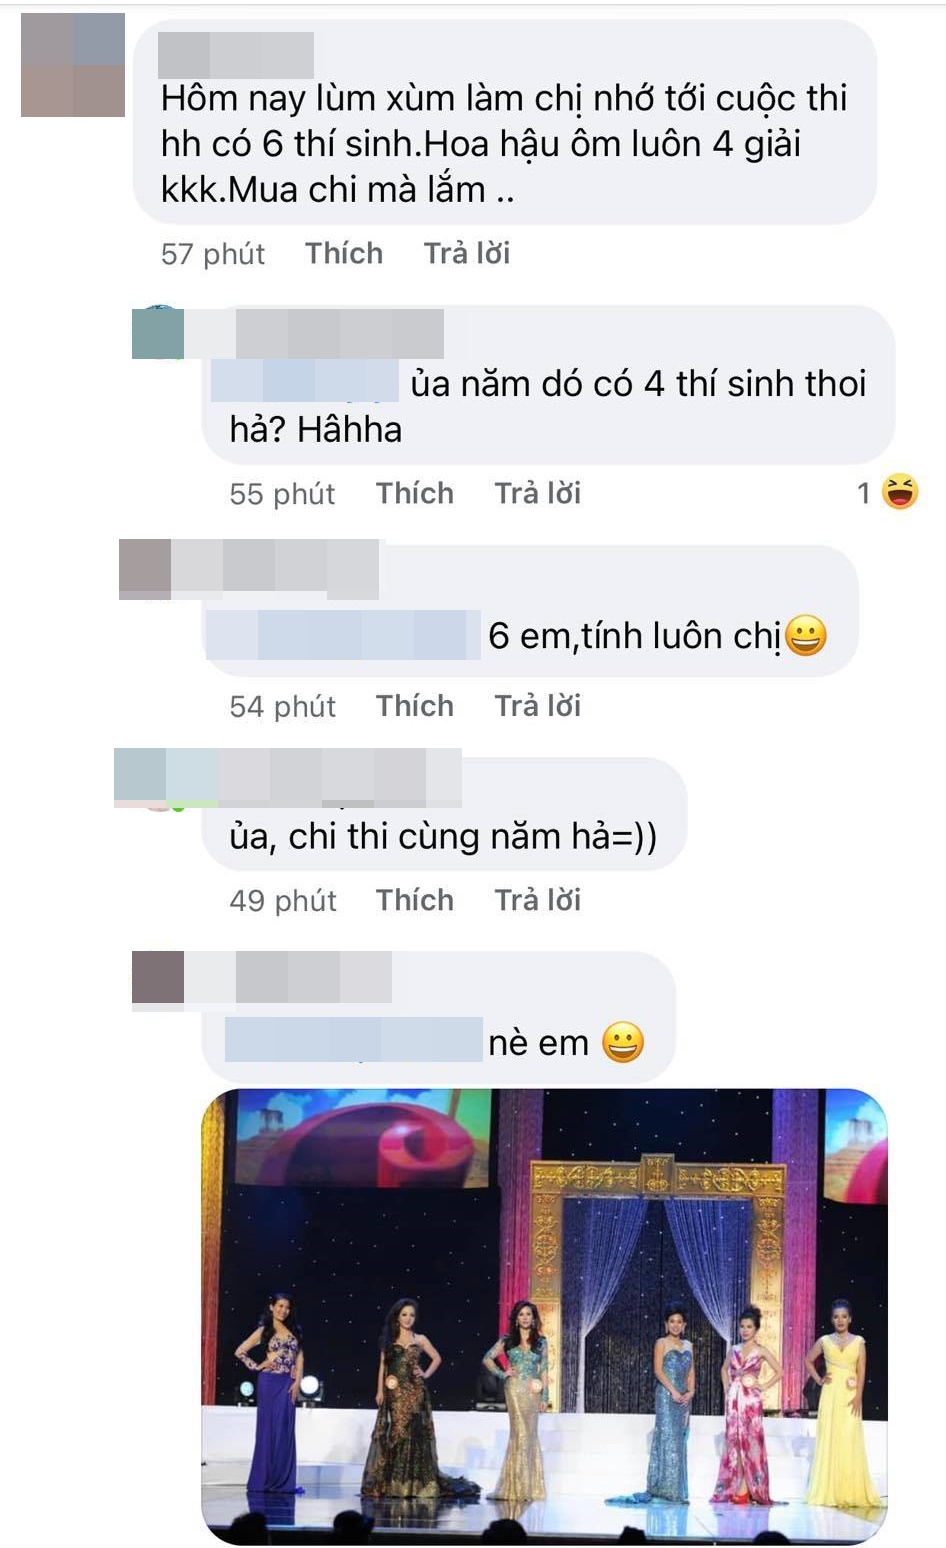 HH Thu Hoài thi Hoa hậu phu nhân người Việt, cuộc thi chỉ 6 người tham gia - Ảnh 3